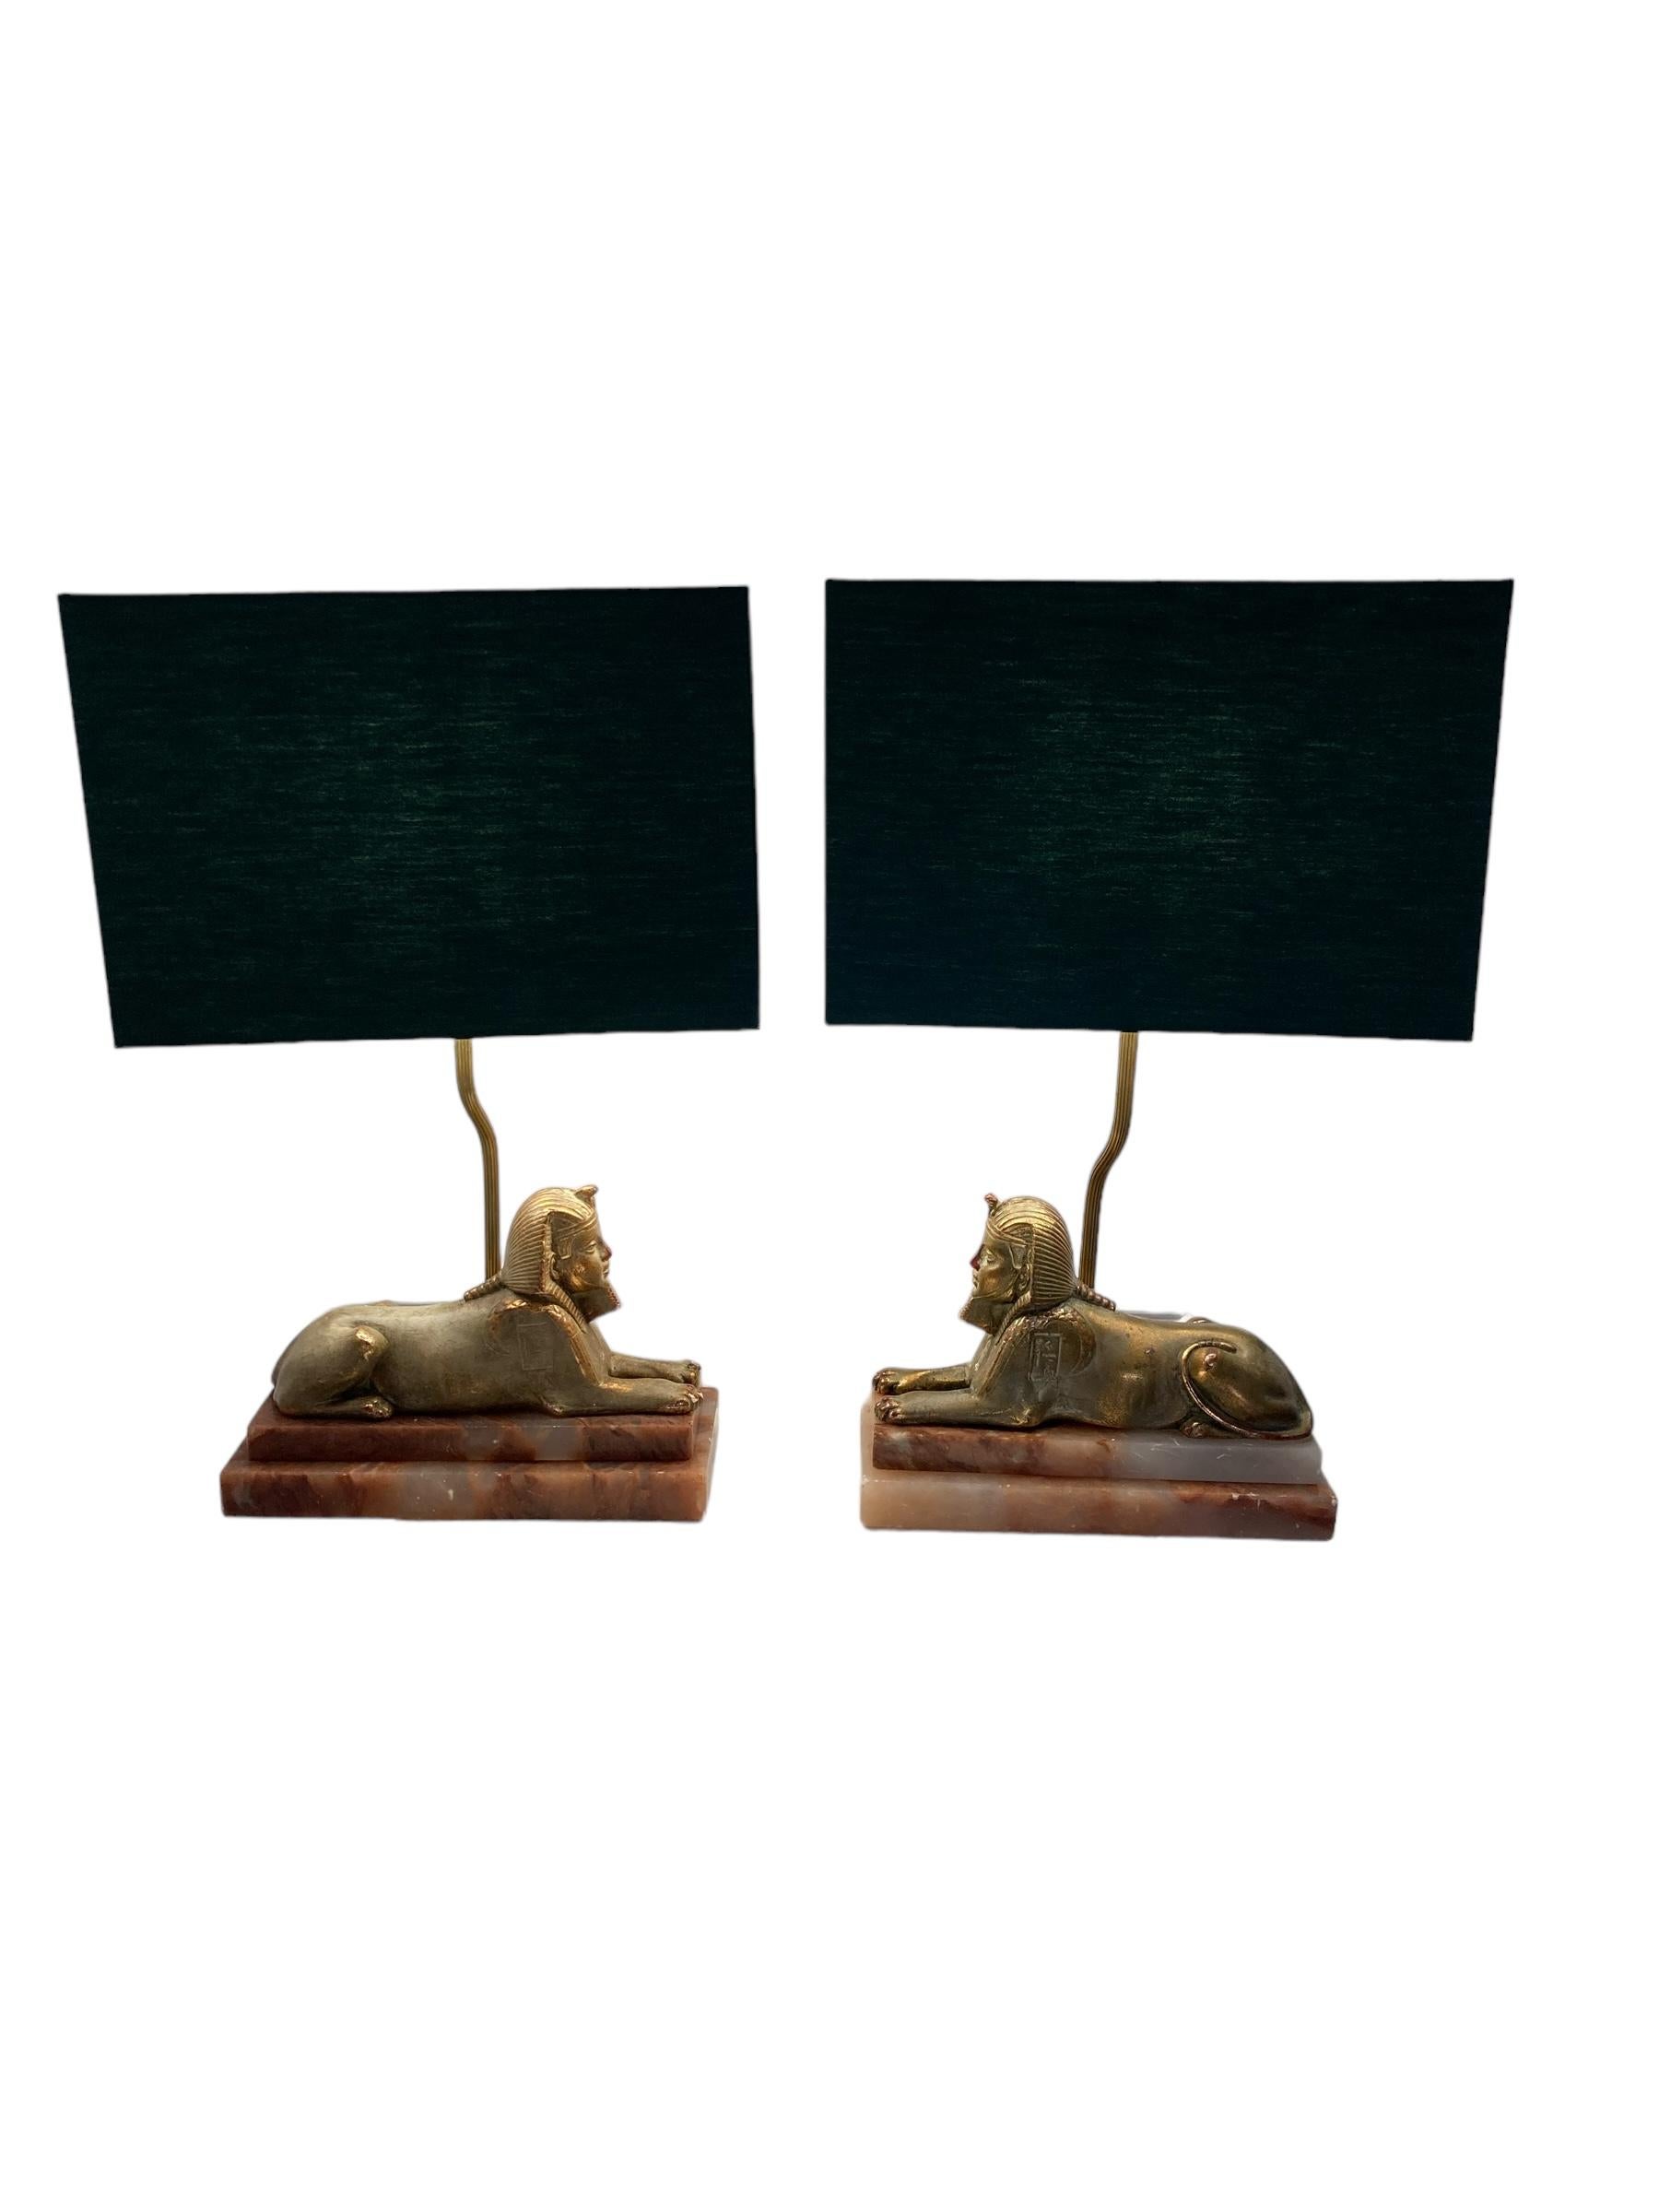 Paar Art Deco Egytian Sphinx Stil Tischlampen auf einem Marmorsockel dunkelgrüne Schirme.  Diese mit viel Liebe zum Detail gefertigte Leuchte vereint mühelos Eleganz und Stärke. Wunderschön geformt, verleiht sie jedem Raum einen Hauch von